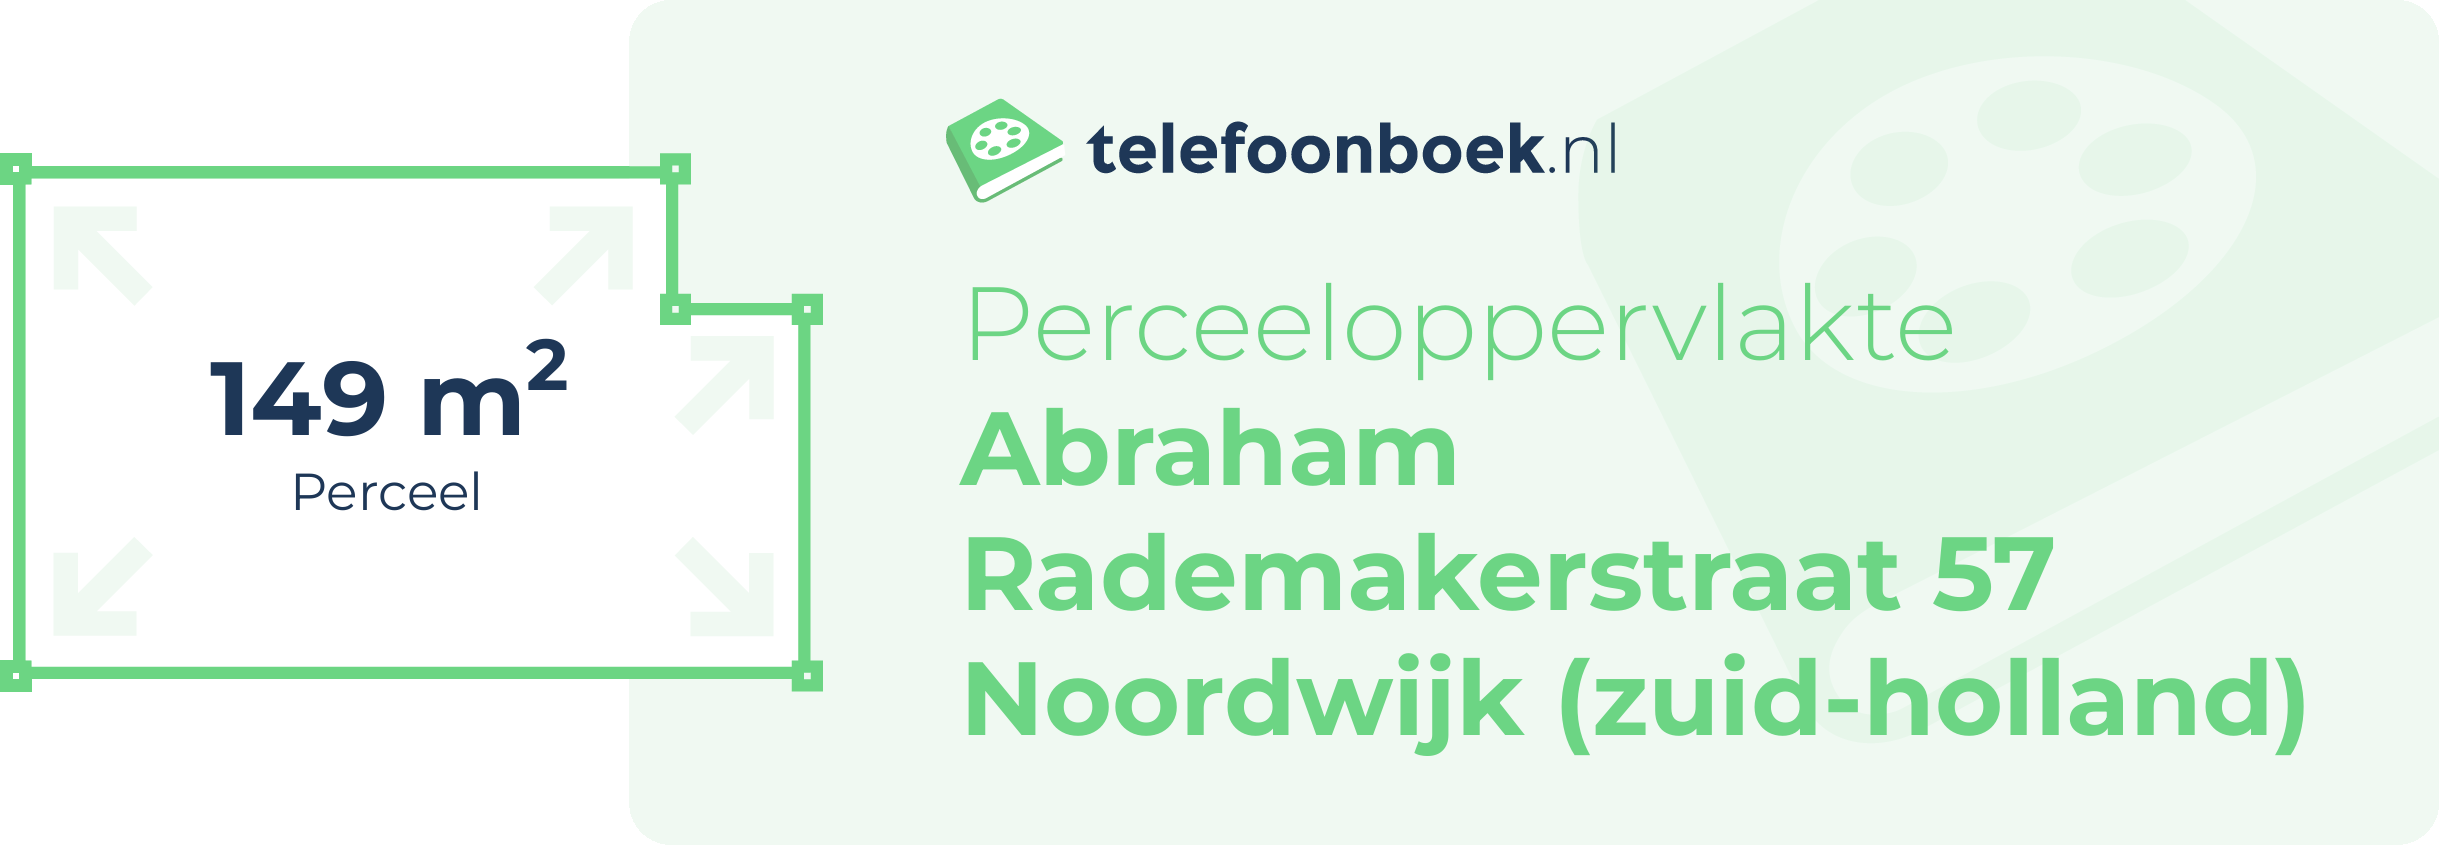 Perceeloppervlakte Abraham Rademakerstraat 57 Noordwijk (Zuid-Holland)